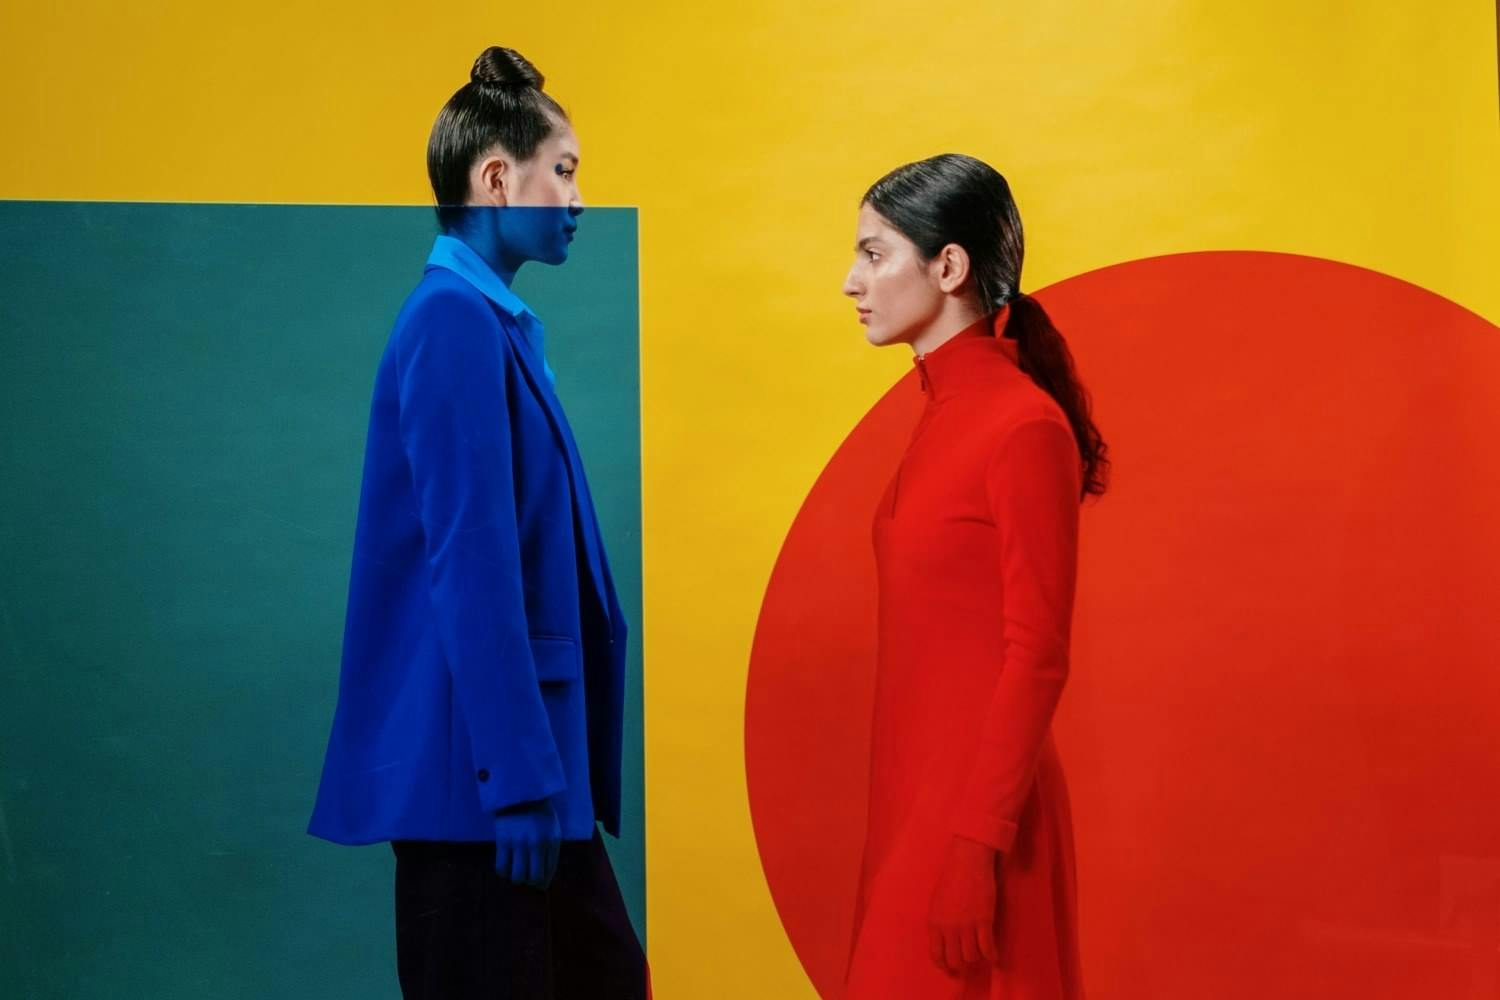 Vrouwen met kleurrijke achtergrond - Cottonbro Studio via Pexels